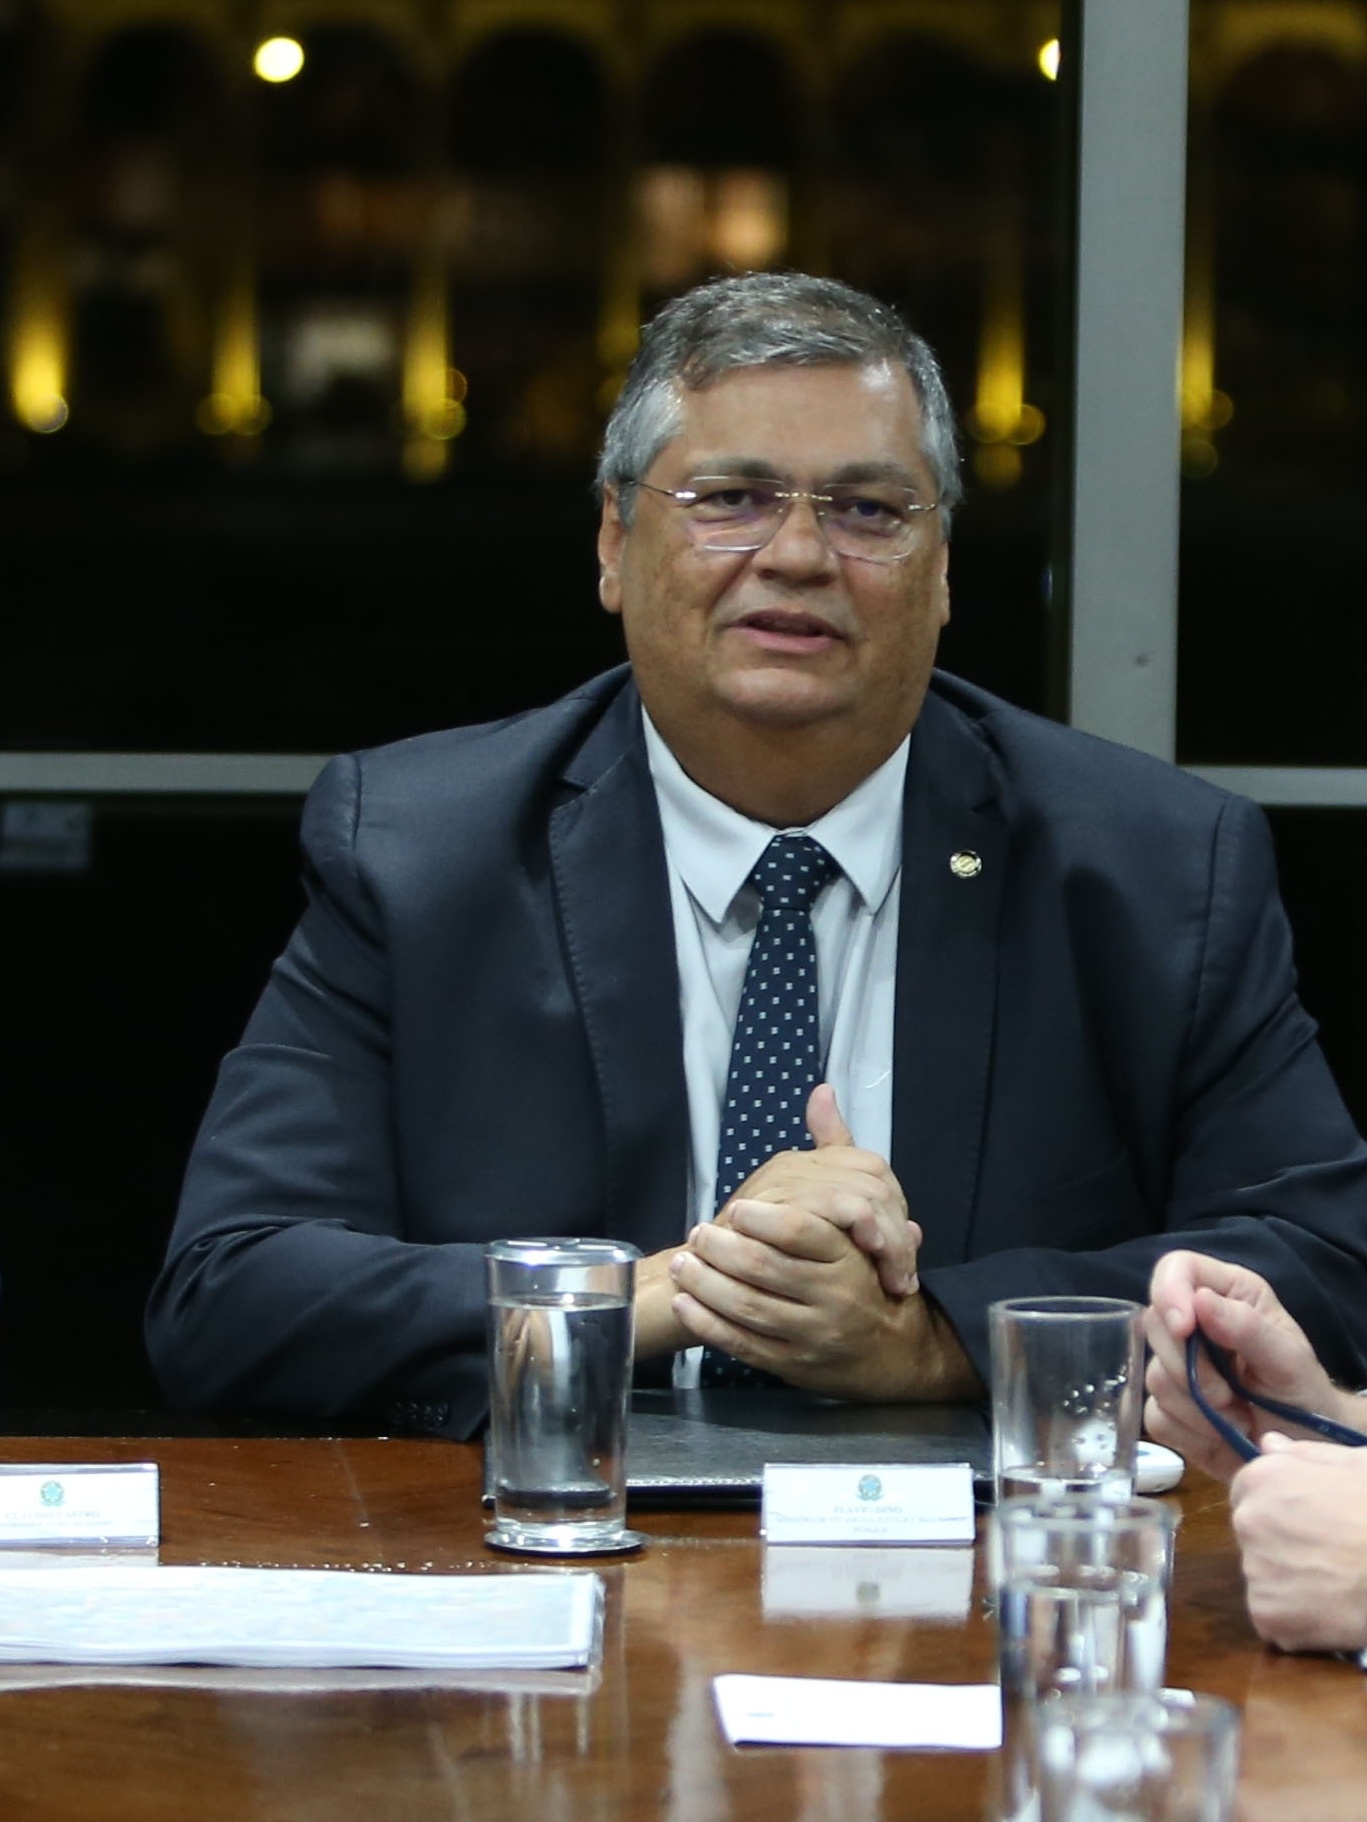 Escalada de violência: Dino autoriza Força Nacional no Rio e anuncia R$ 20  milhões para a Bahia, Política